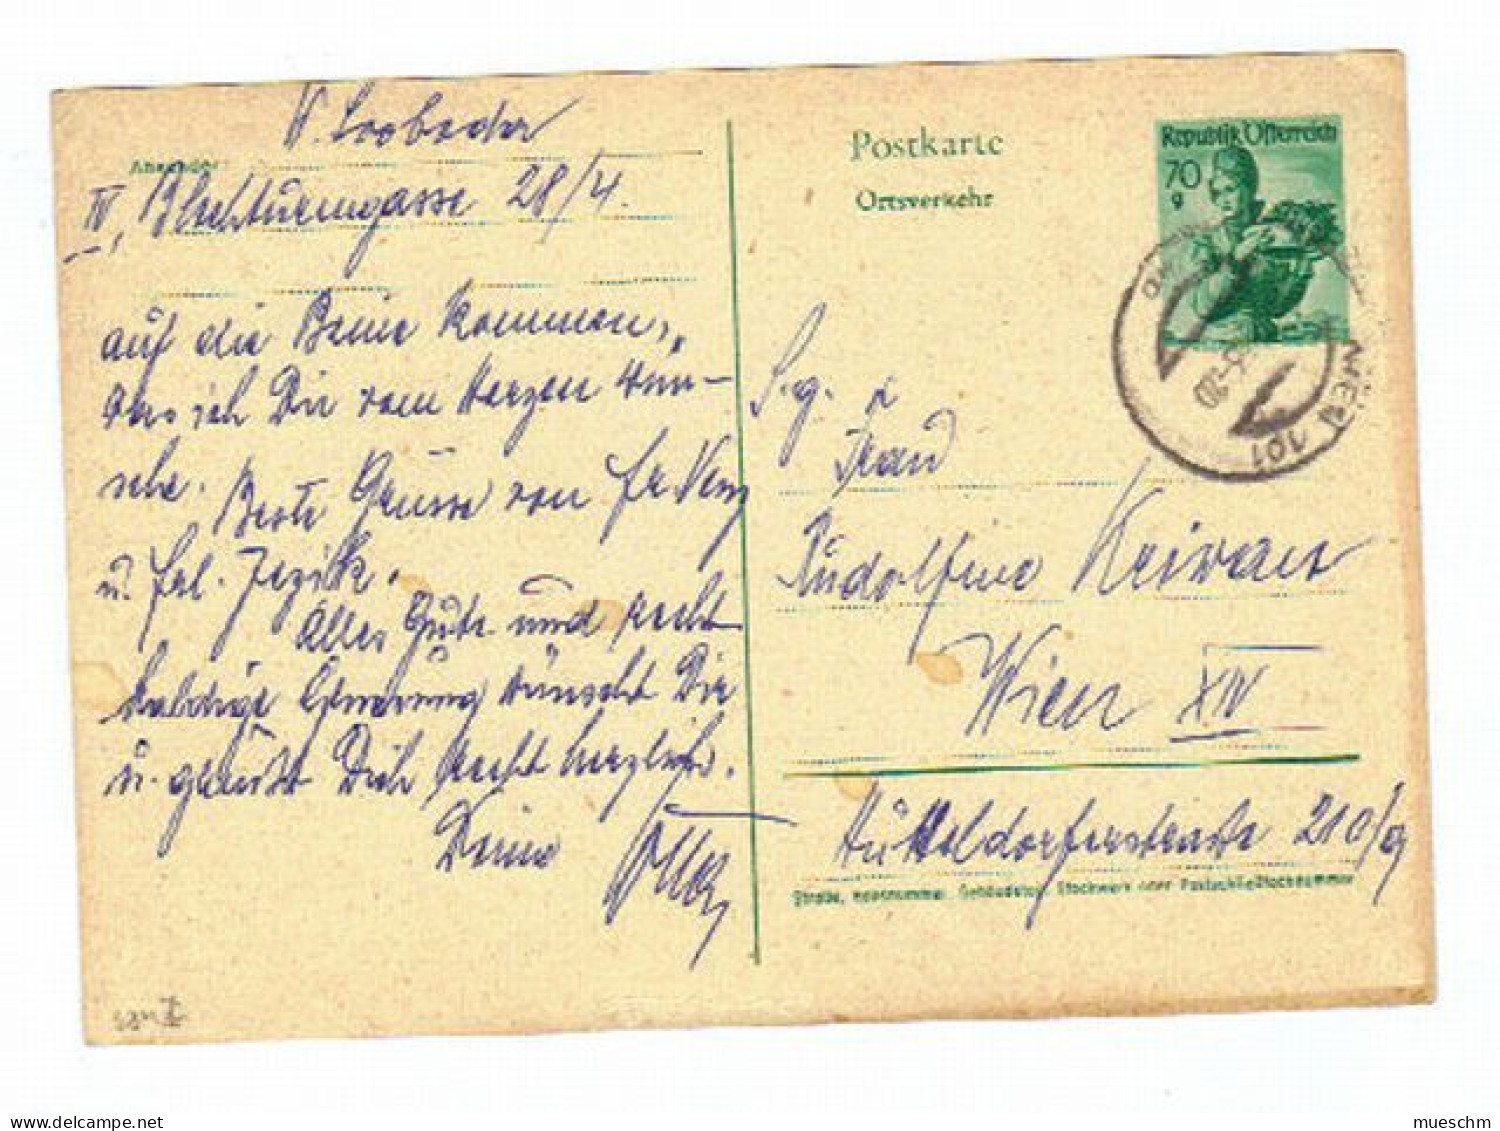 Österreich, 1963, Postkarte "Ortsverkehr" M. Eingedr. Frankatur 70g (10881W) - Cartes Postales